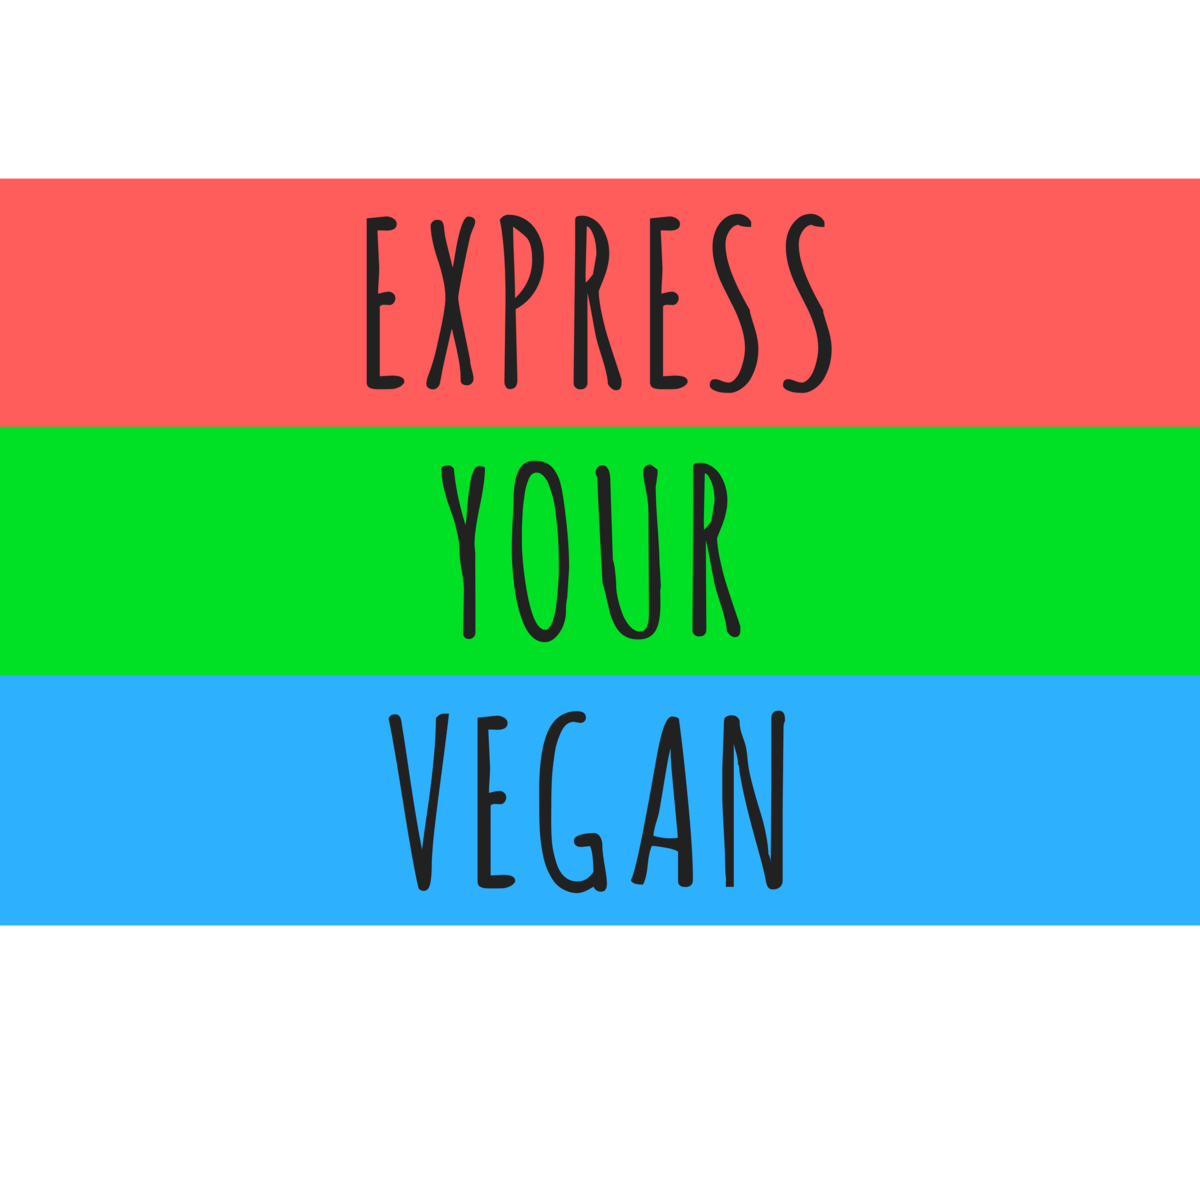 Express Your Vegan